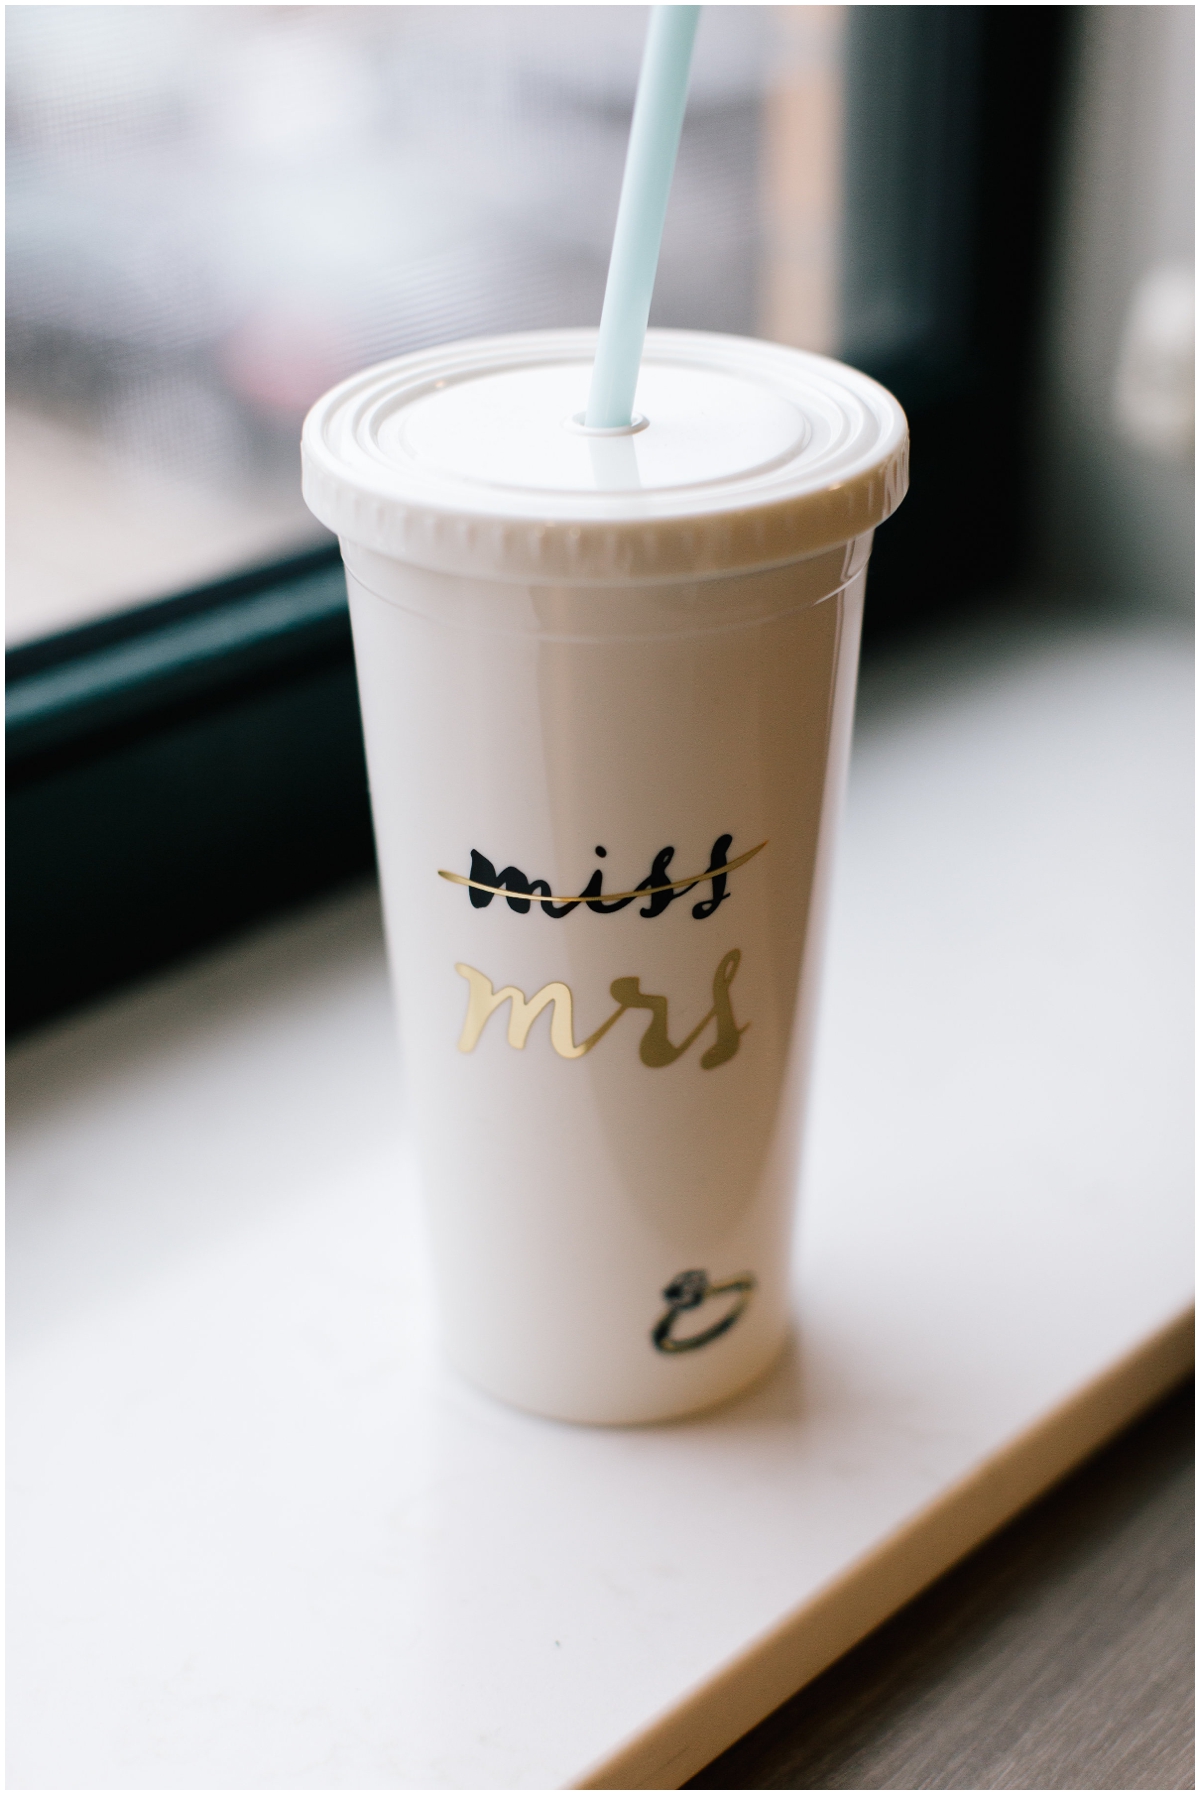  Bride’s wedding drink cup. 